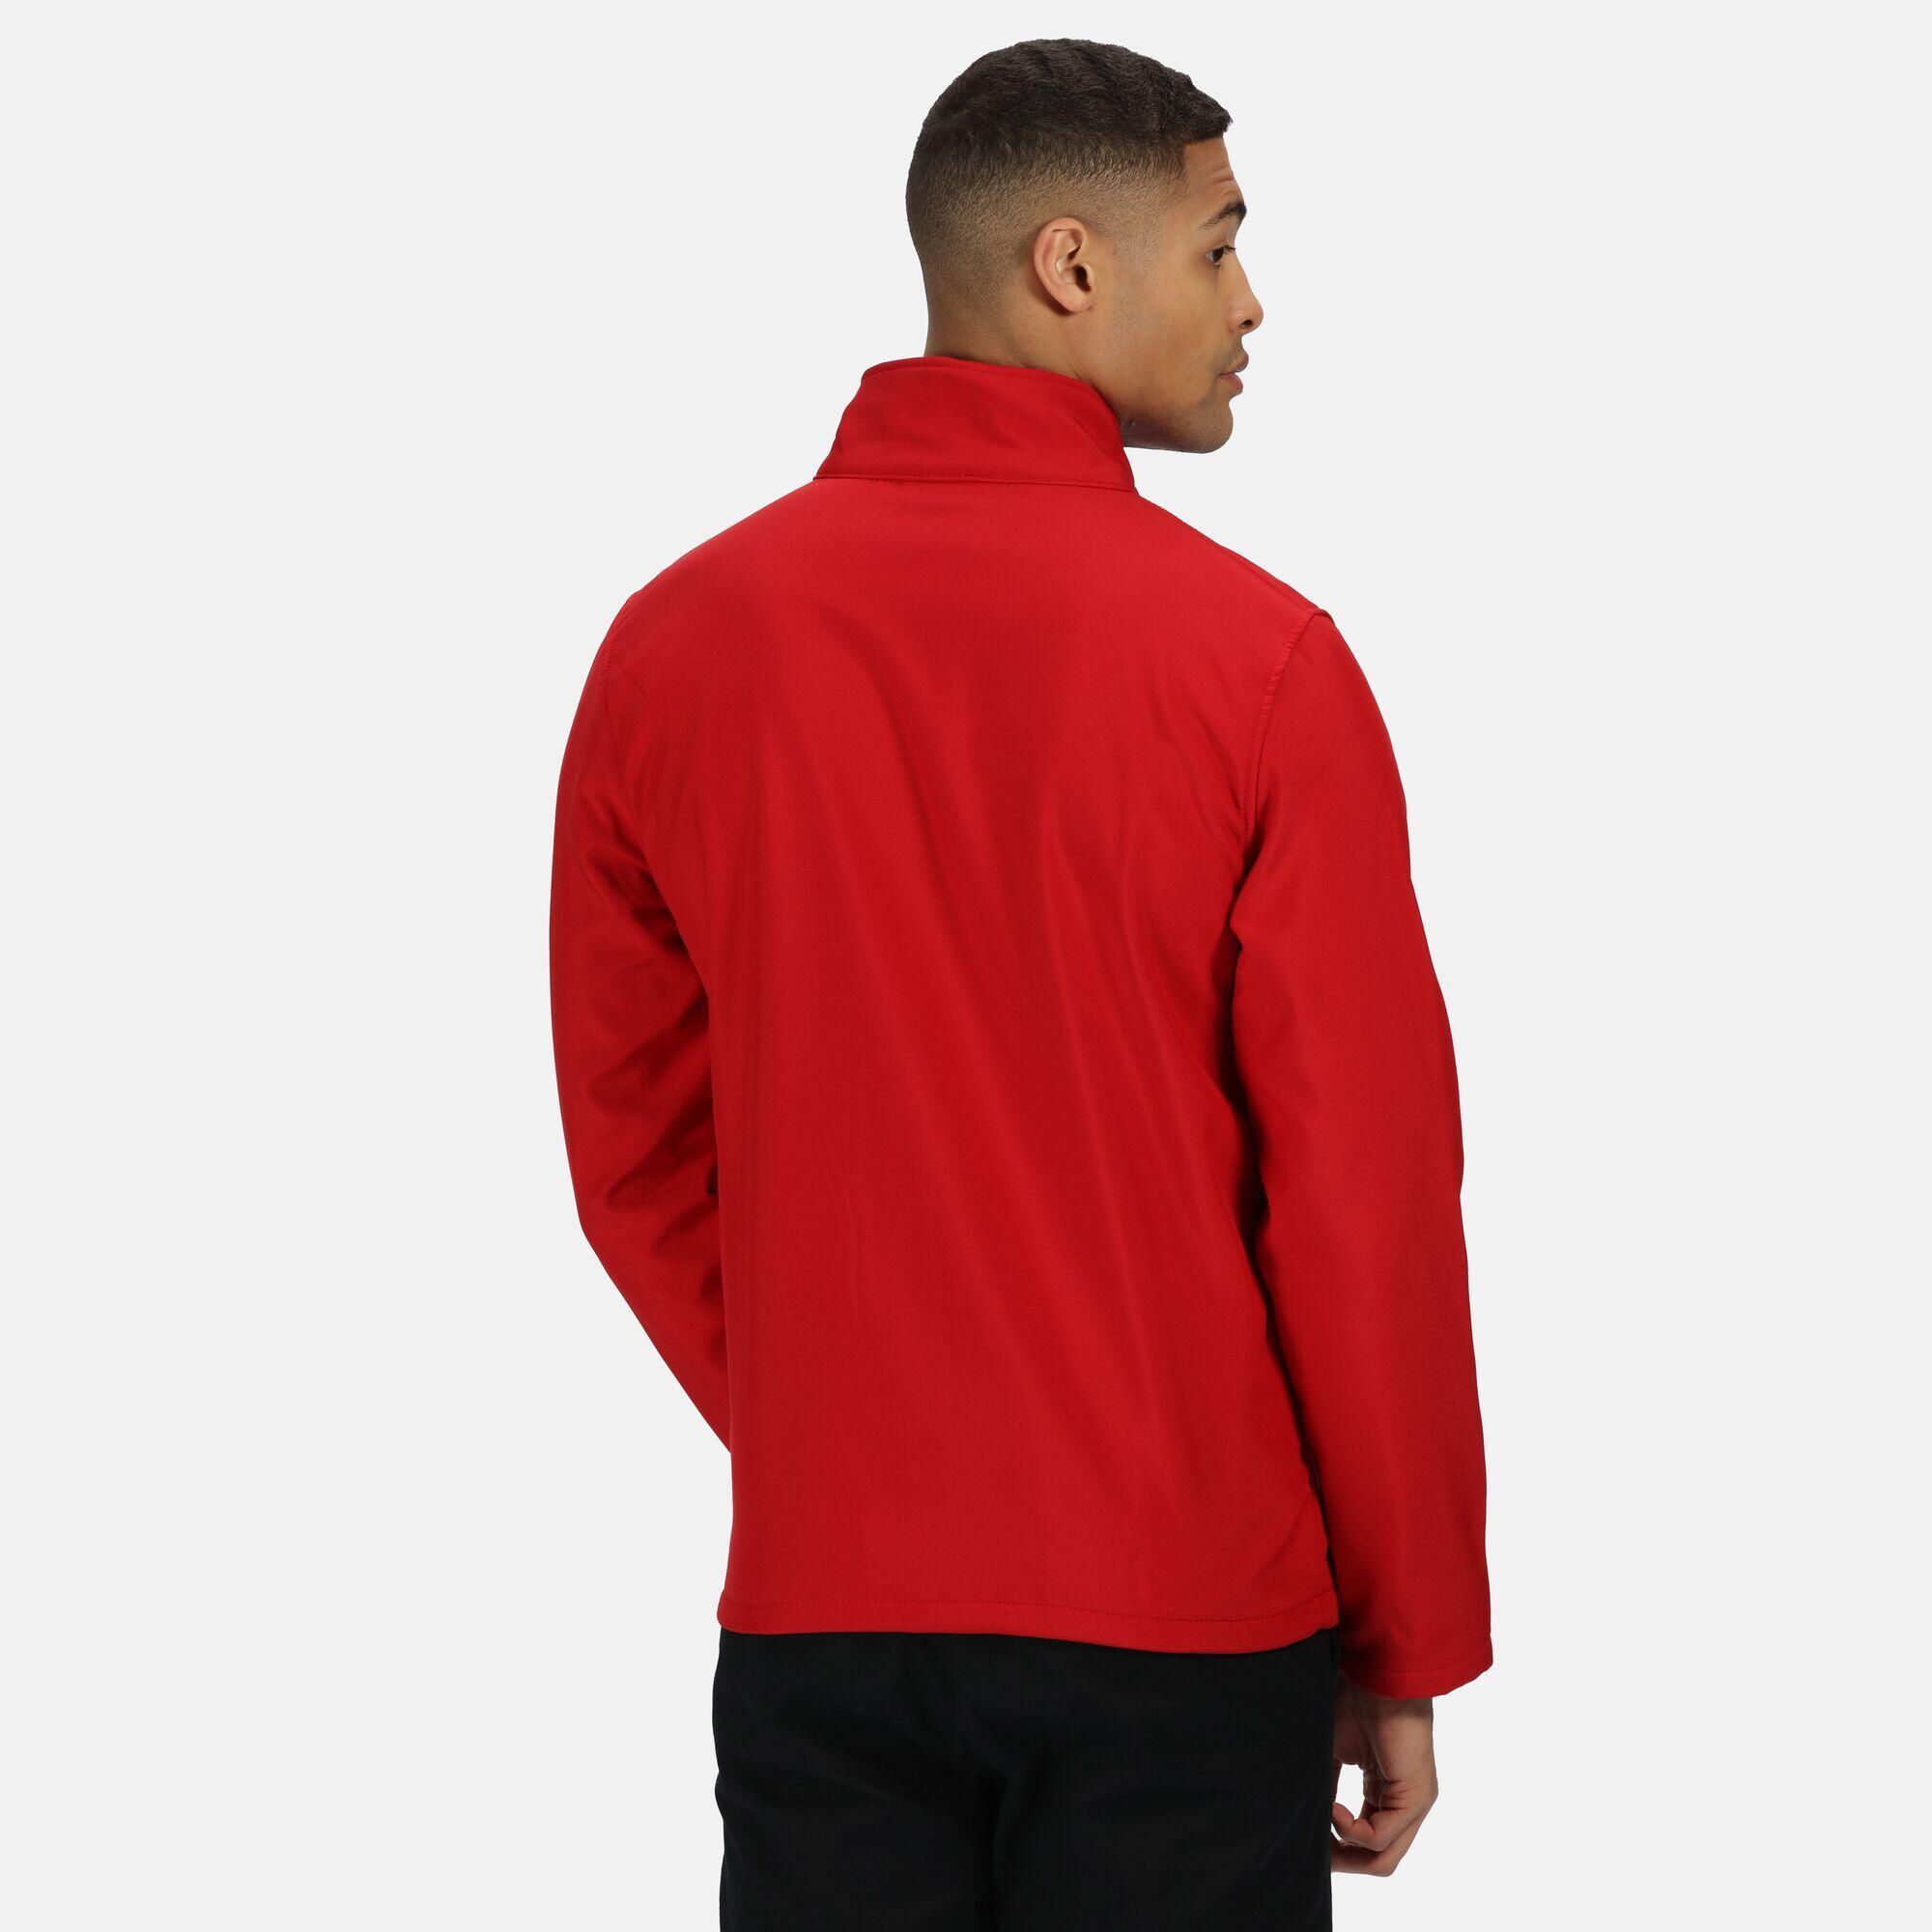 Mens Ablaze Printable Softshell Jacket (Classic Red/Black) 4/5